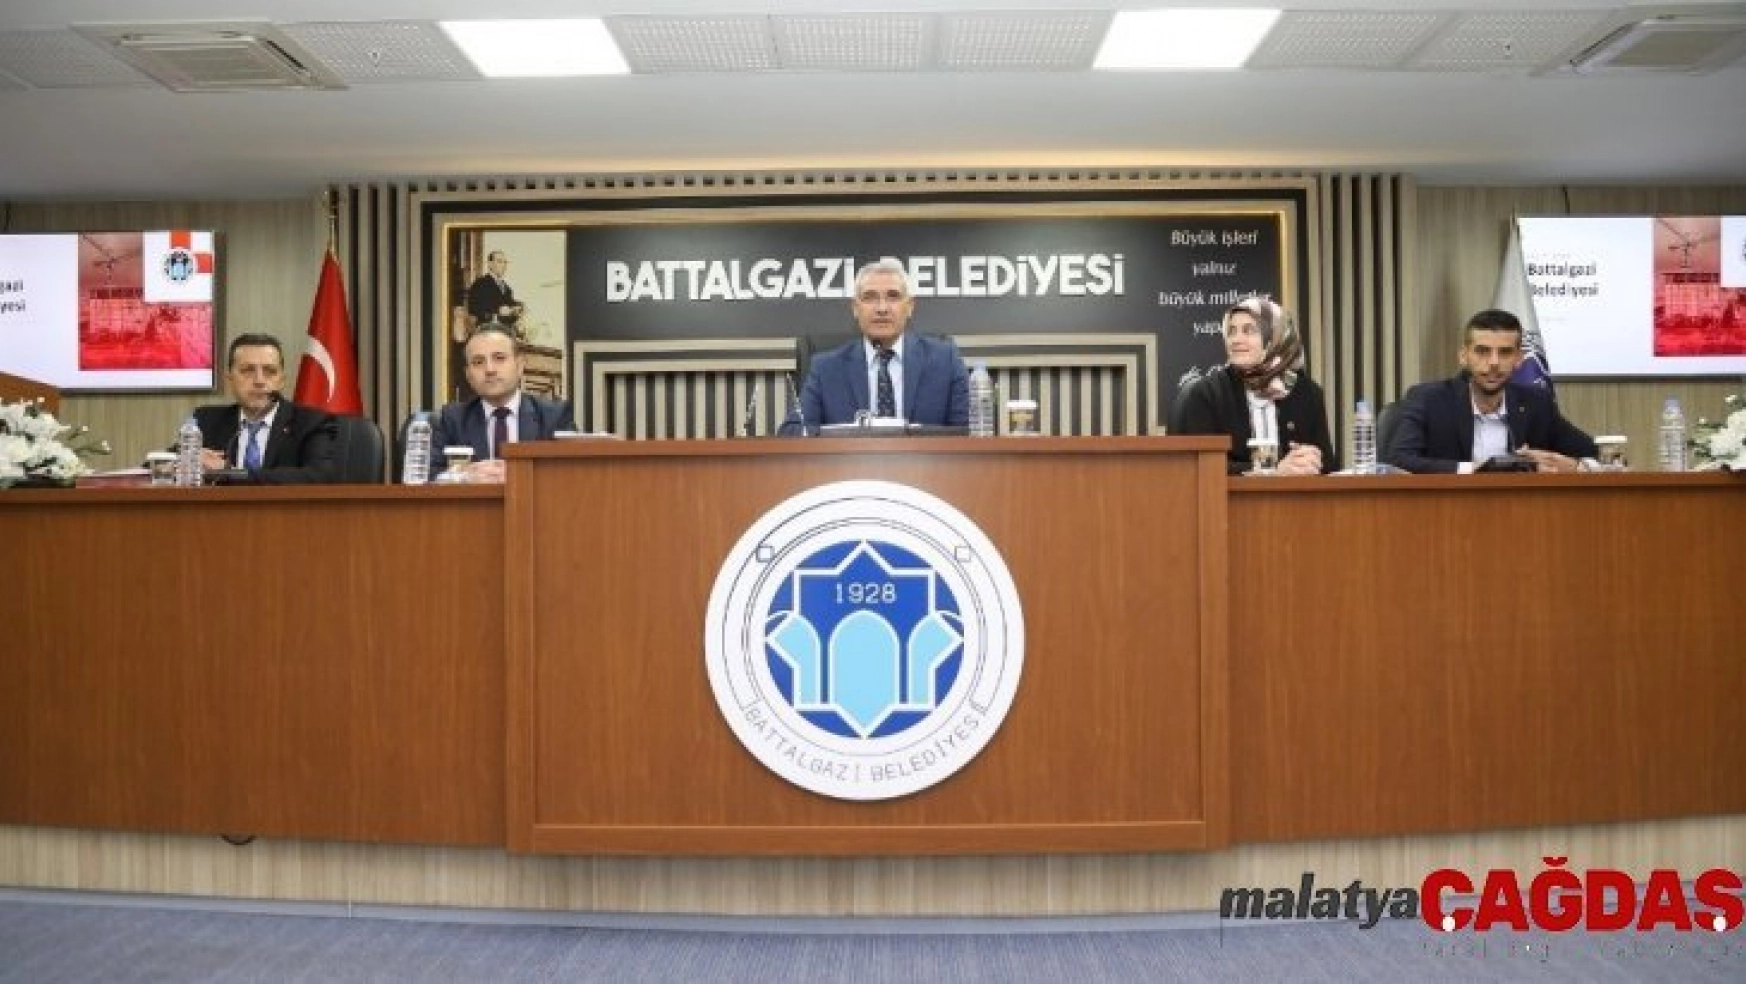 Battalgazi Belediyesi meclisi kasım ayı ilk toplantısını gerçekleştirdi